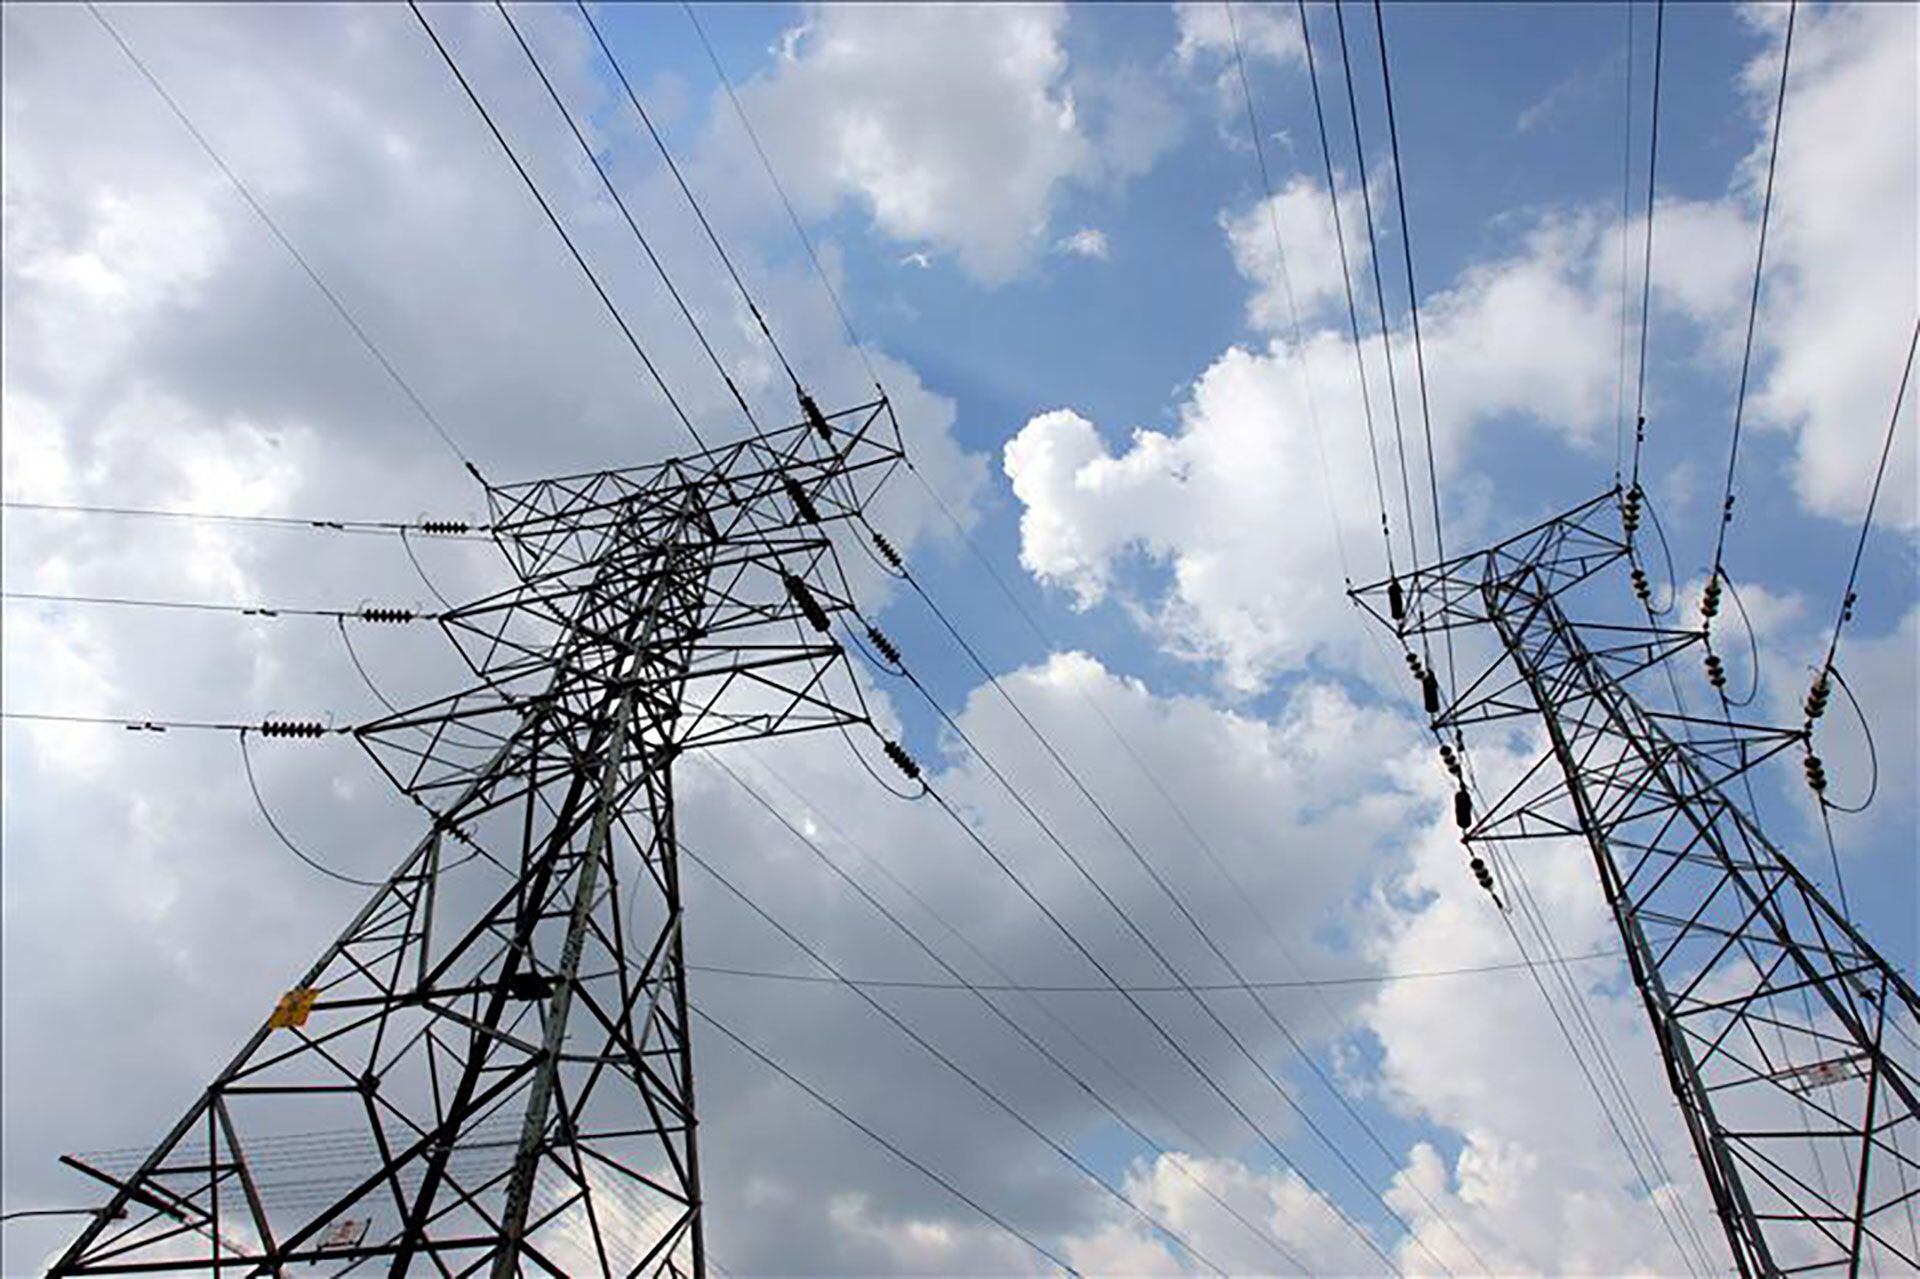 Energía Eléctrica Nicaragua